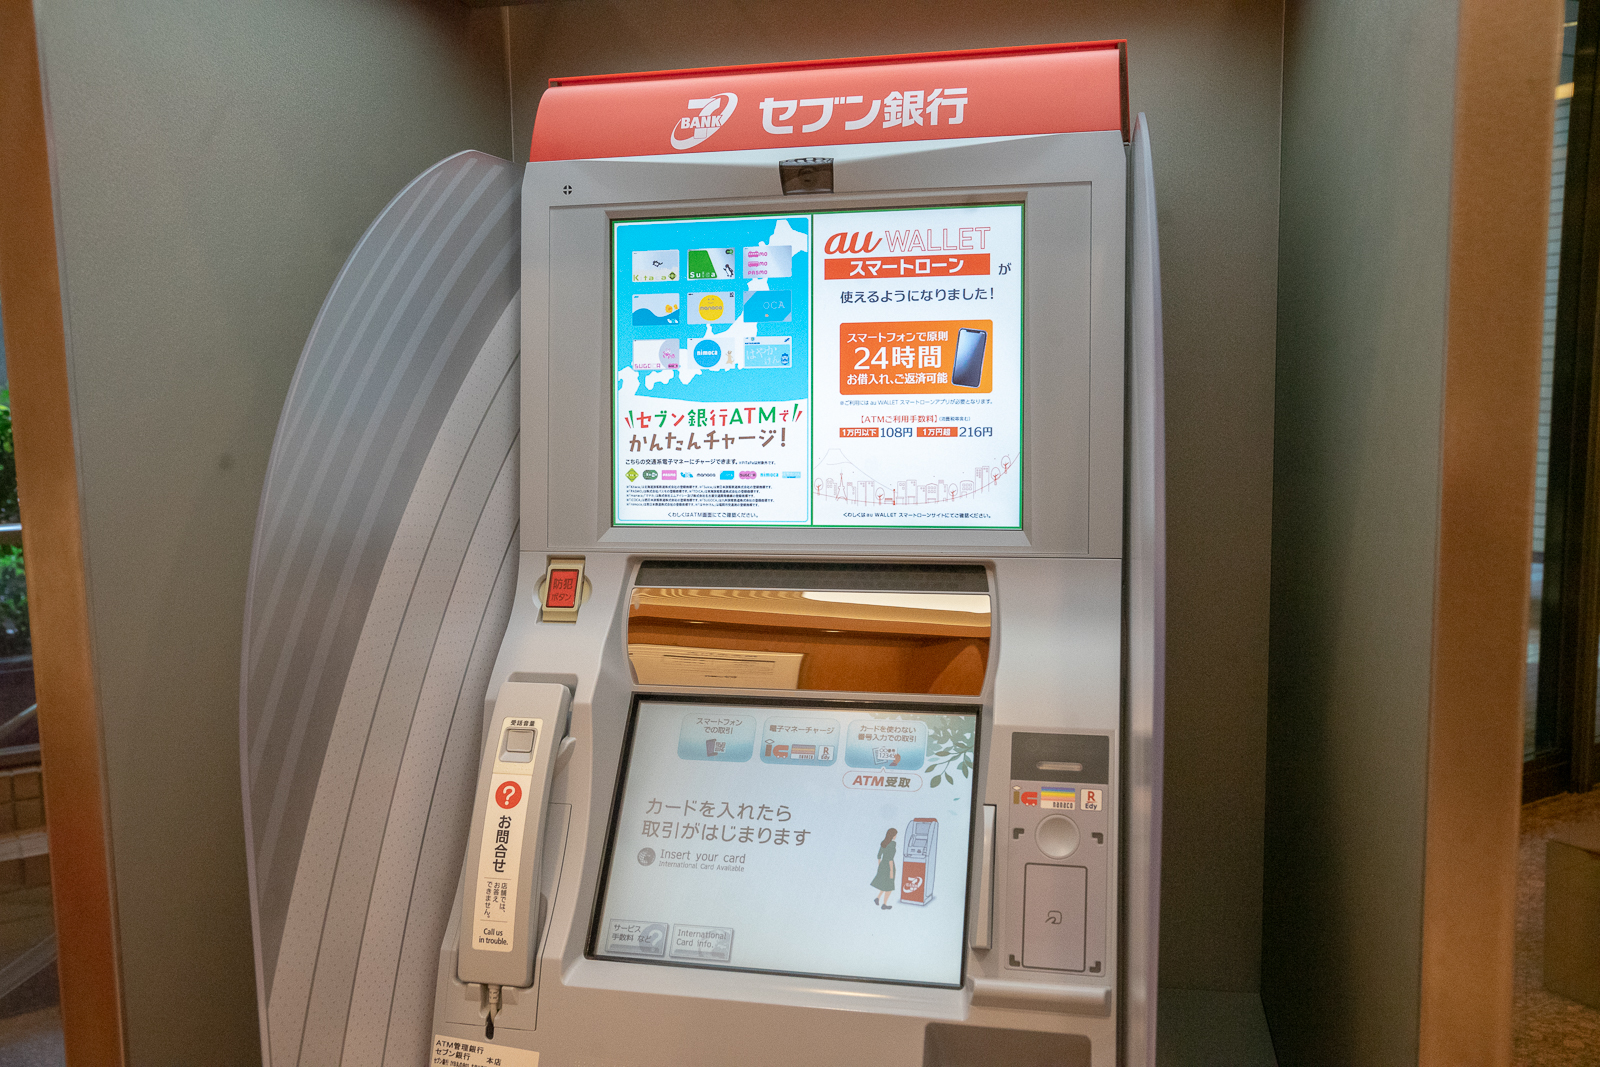 年始 三菱 年末 ufj 東京 atm 銀行 三菱UFJ銀行の年末年始(2021